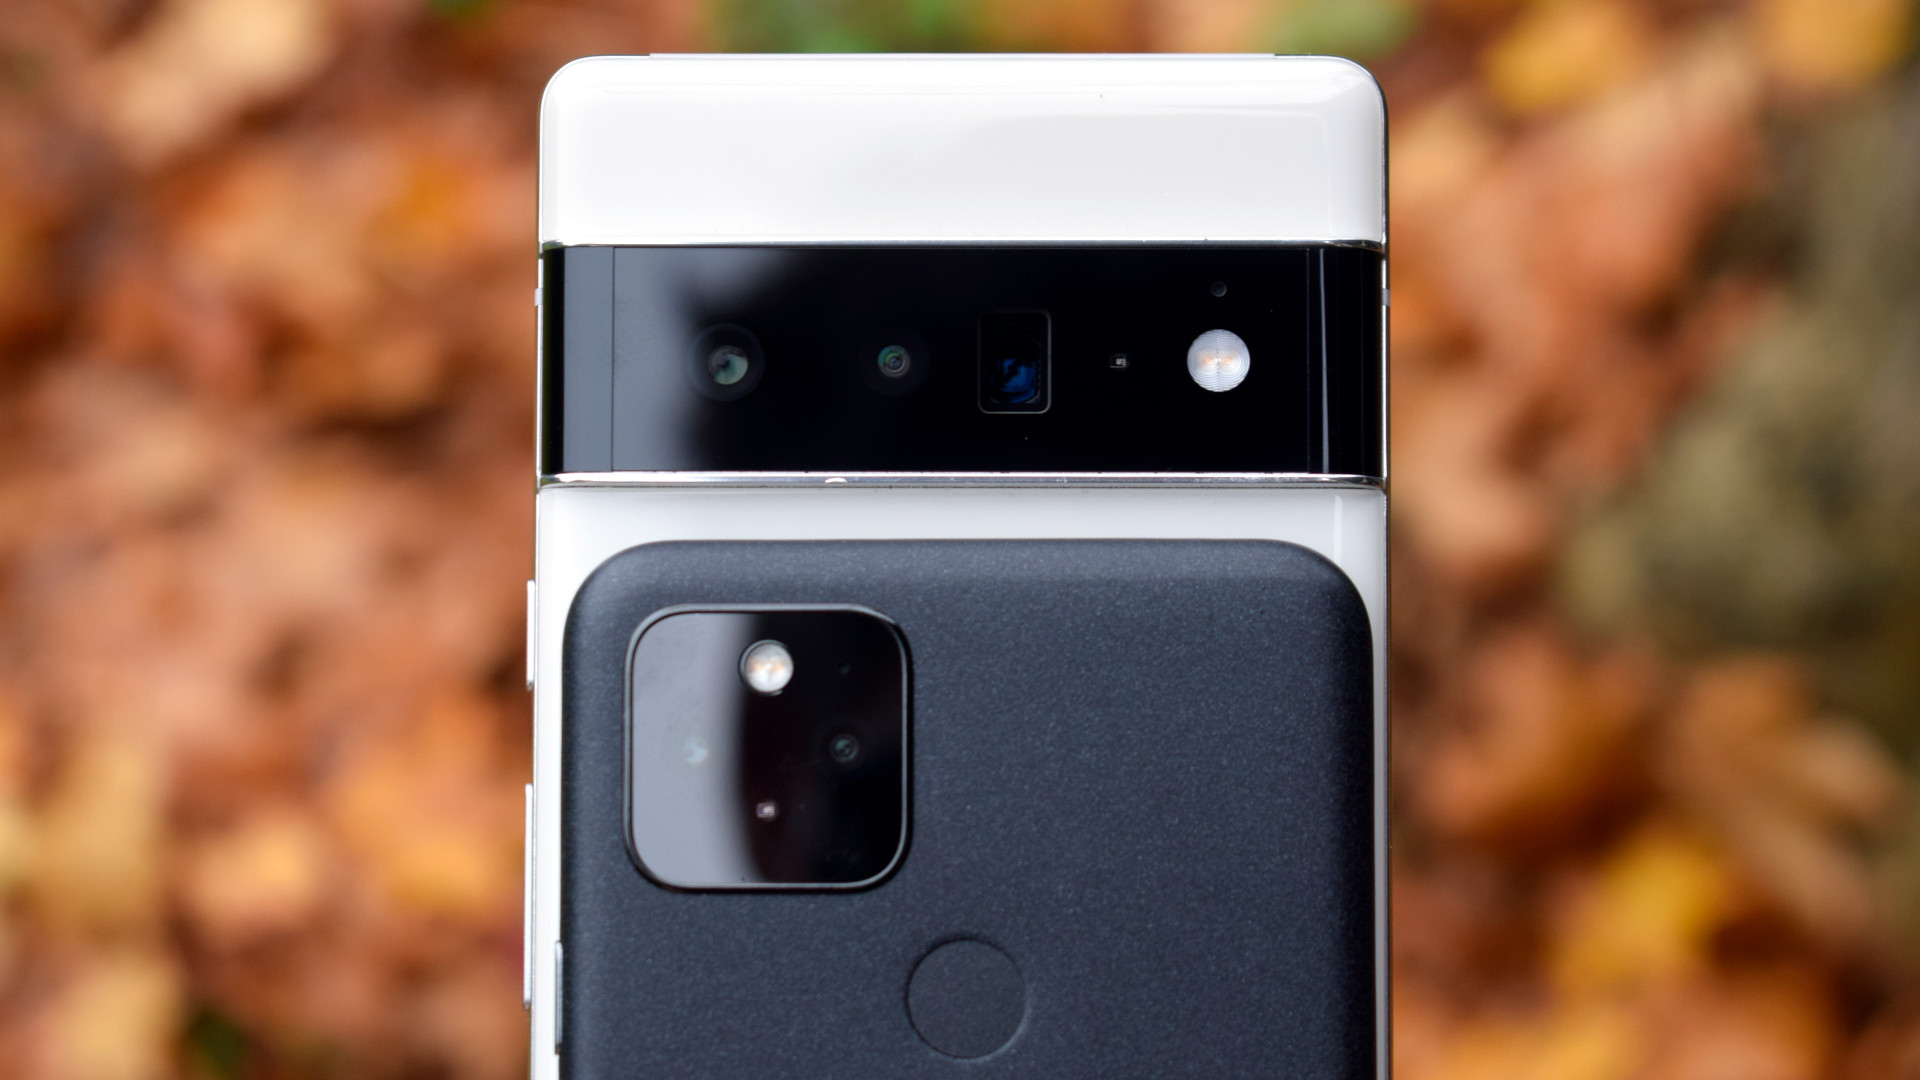 Google Pixel 6 Pro vs Google Pixel 5 camera